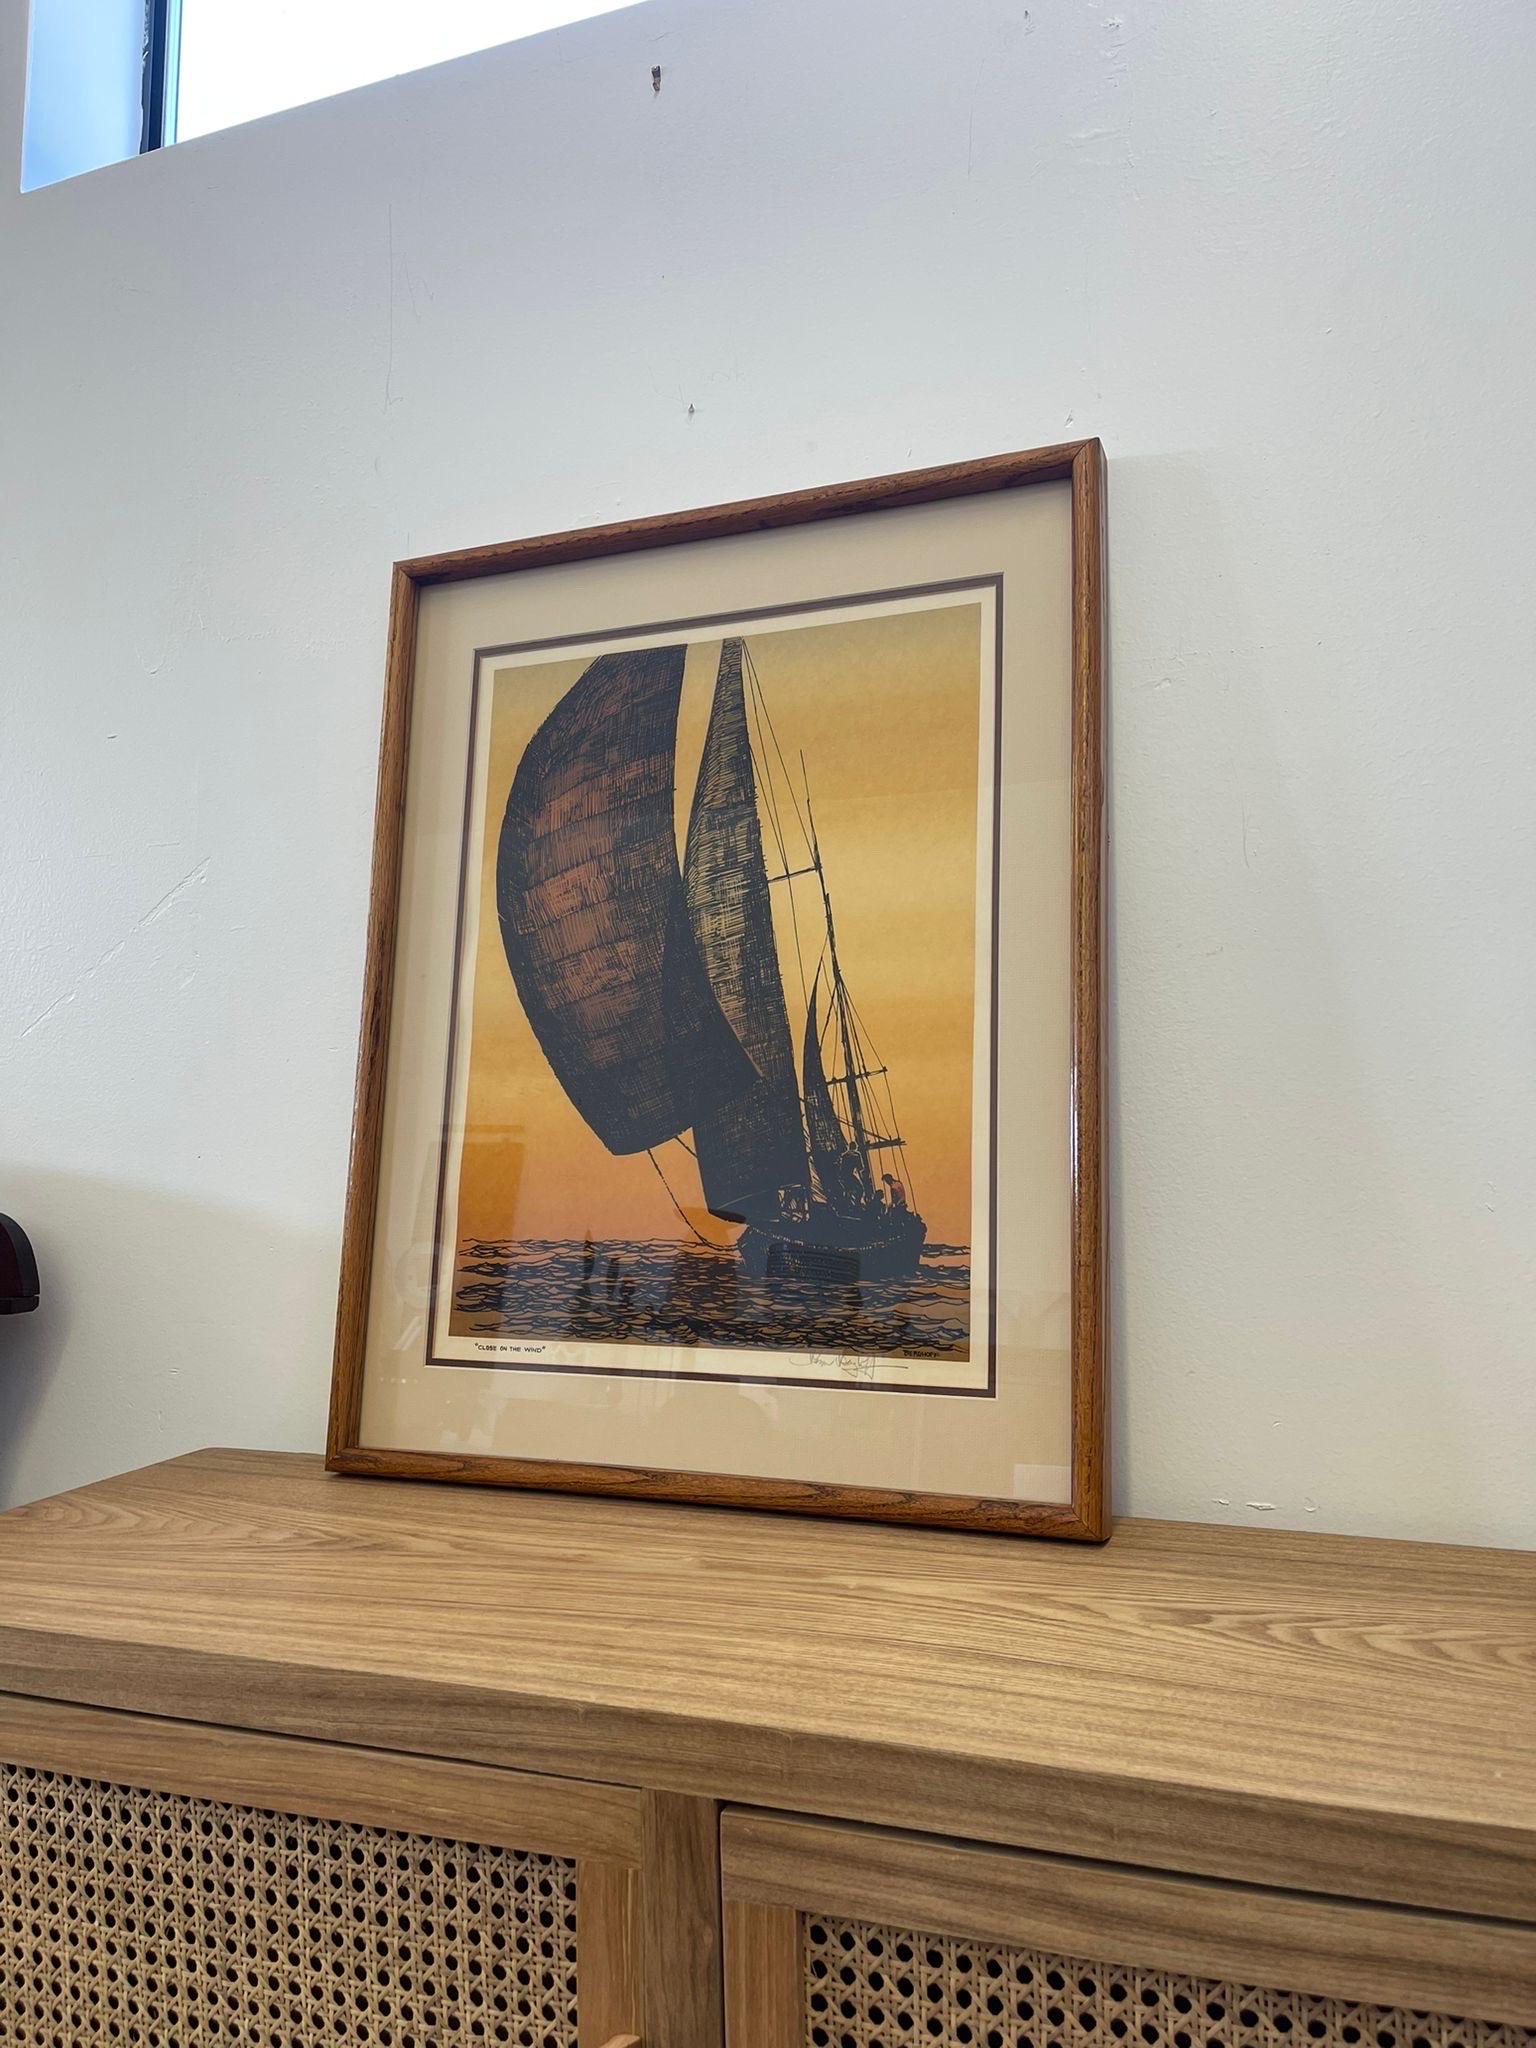 Dieser Druck zeigt eine malerische Ansicht eines Segelbootes auf dem Wasser mit einem gelb getönten Hintergrund. Hergestellt von einem Washingtoner Künstler. Gerahmt und mattiert in einem Holzrahmen. Vintage Condition Konsistent mit dem Alter wie